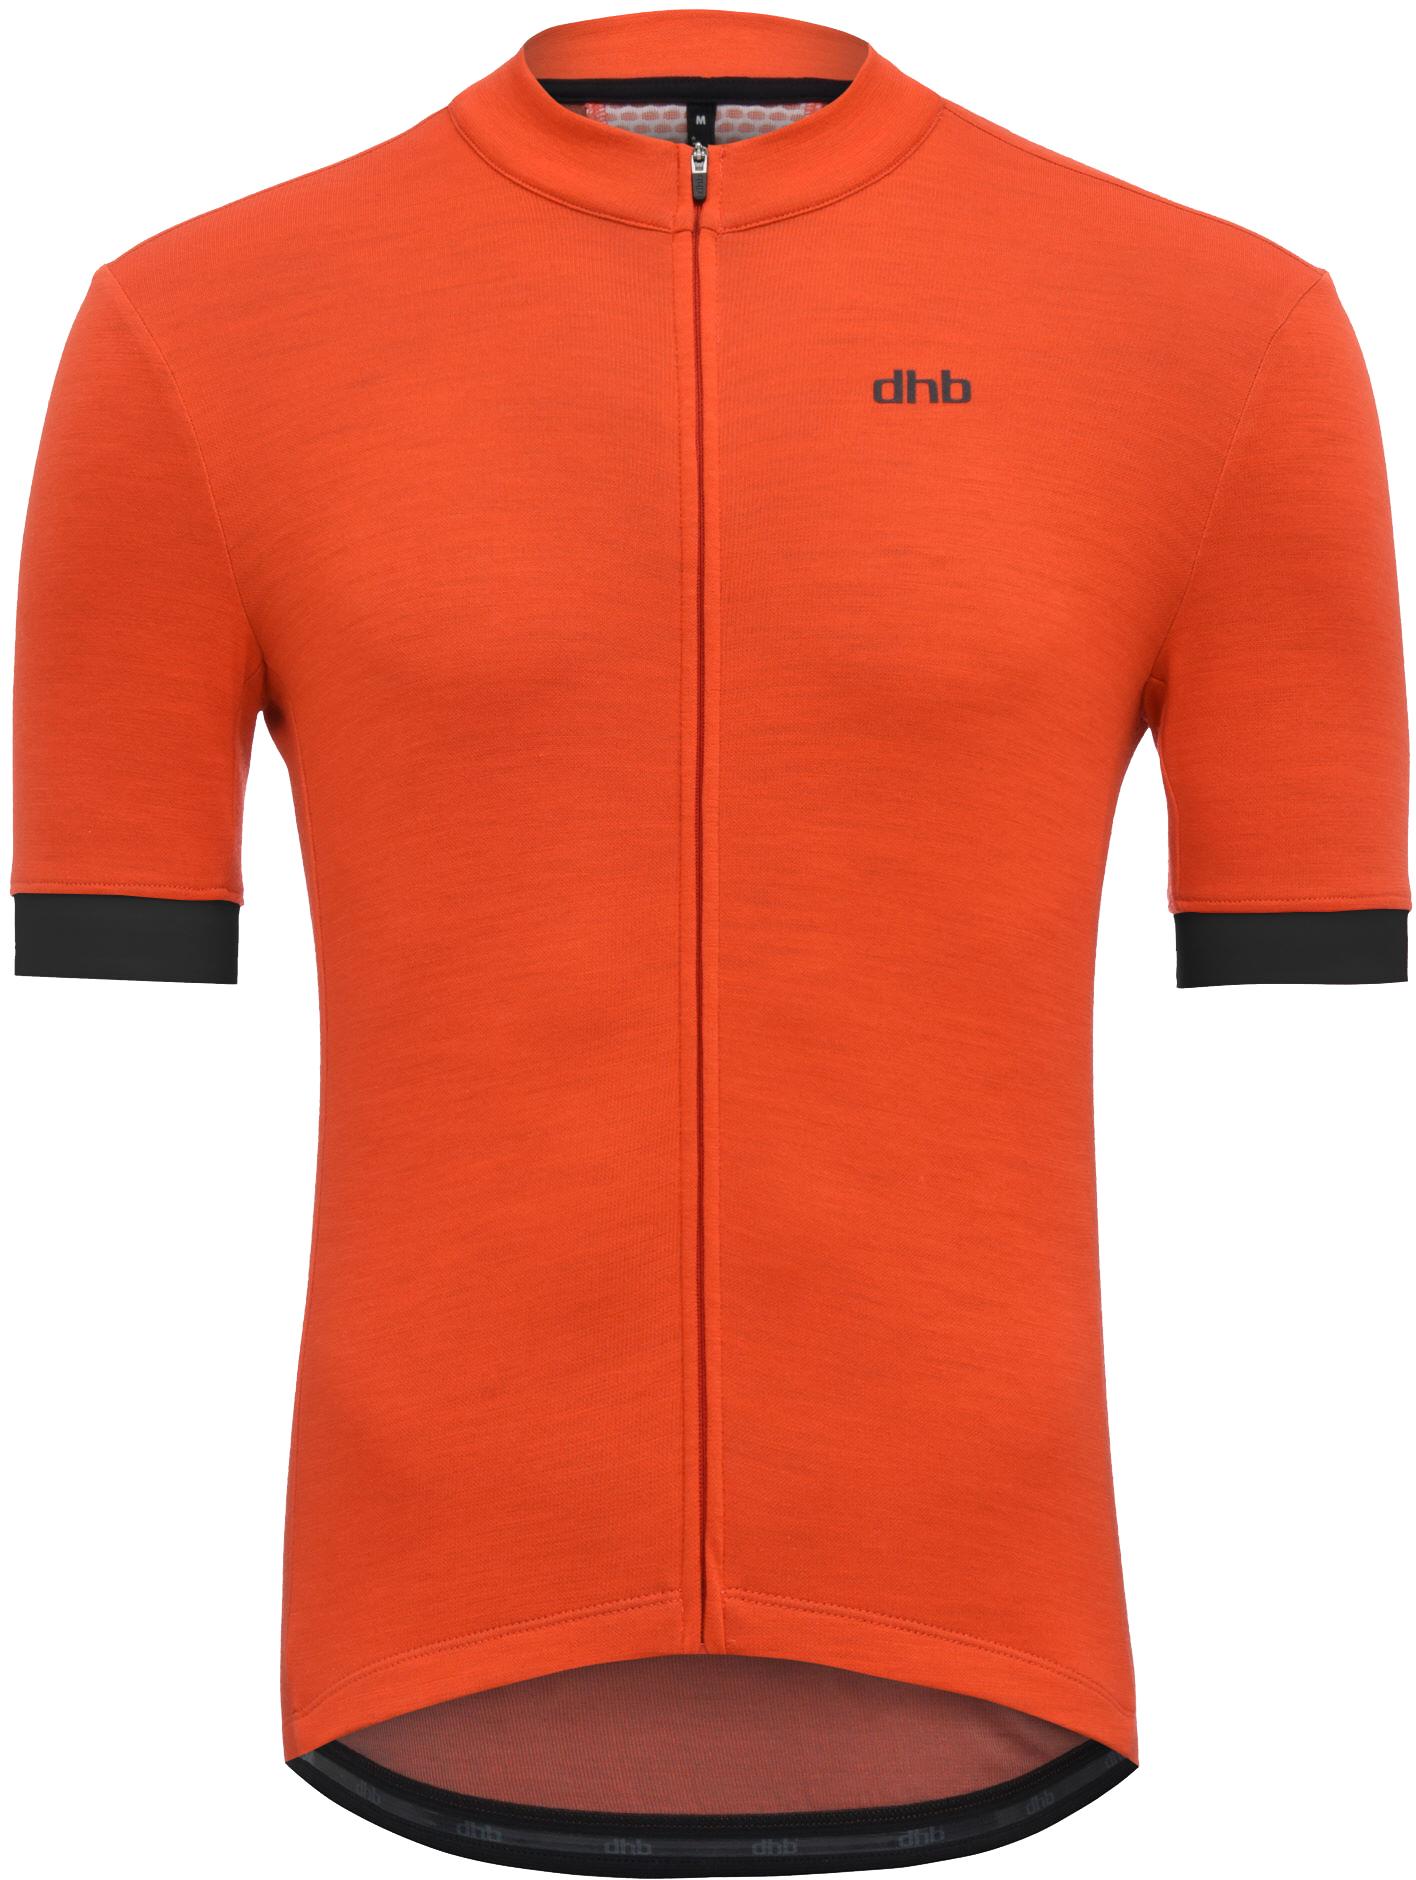 Dhb Merino Short Sleeve Jersey - Dark Orange